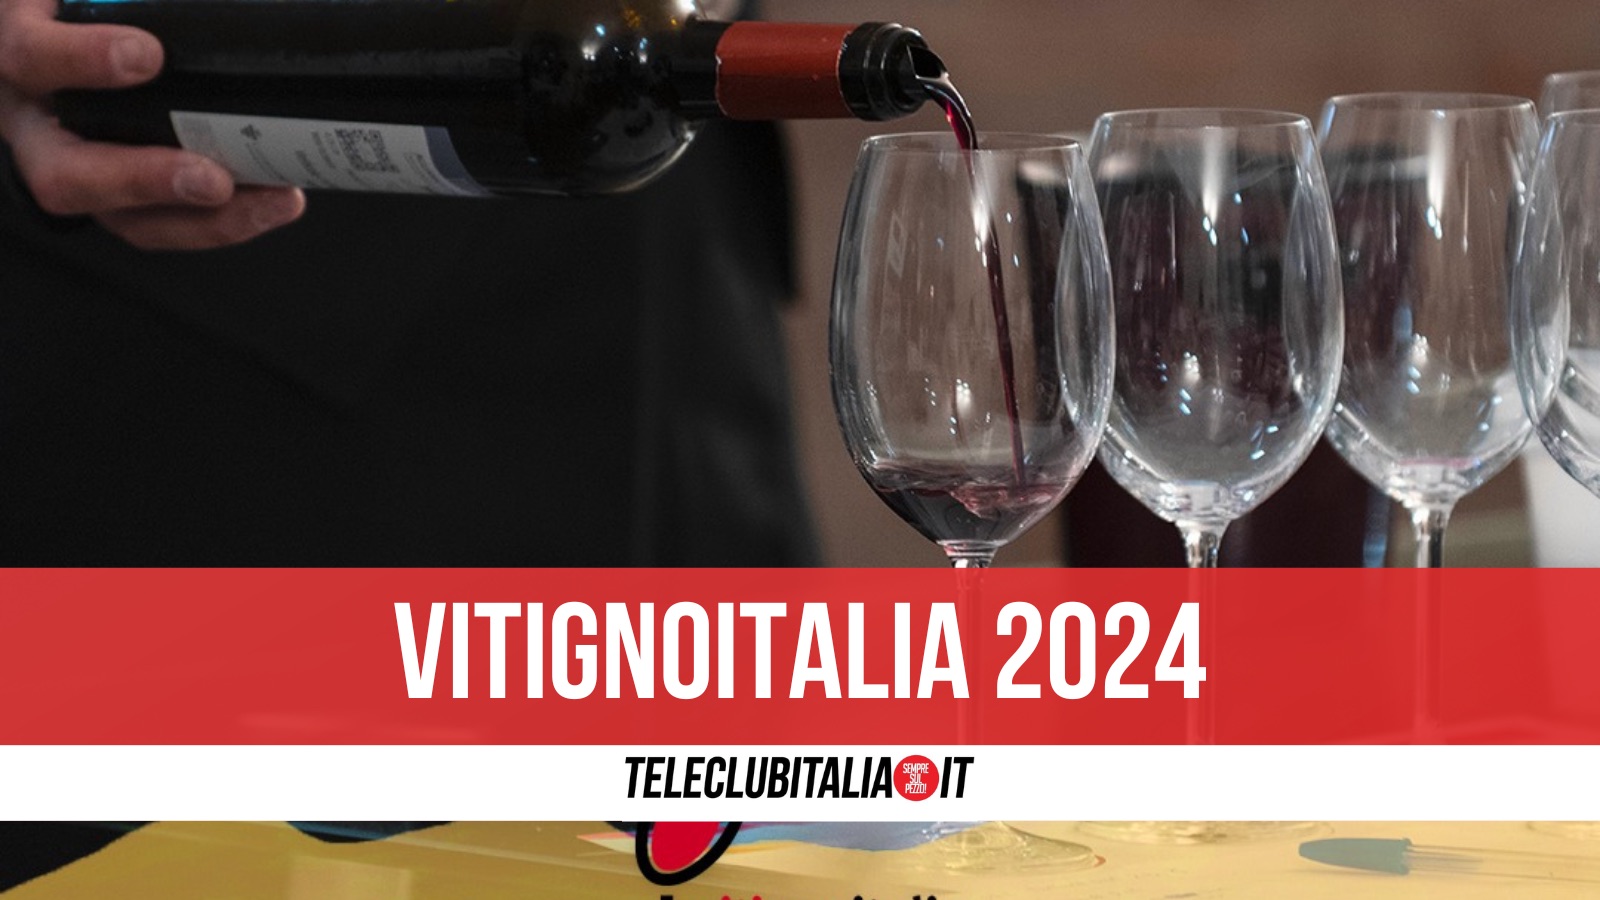 vitignitalia 2024